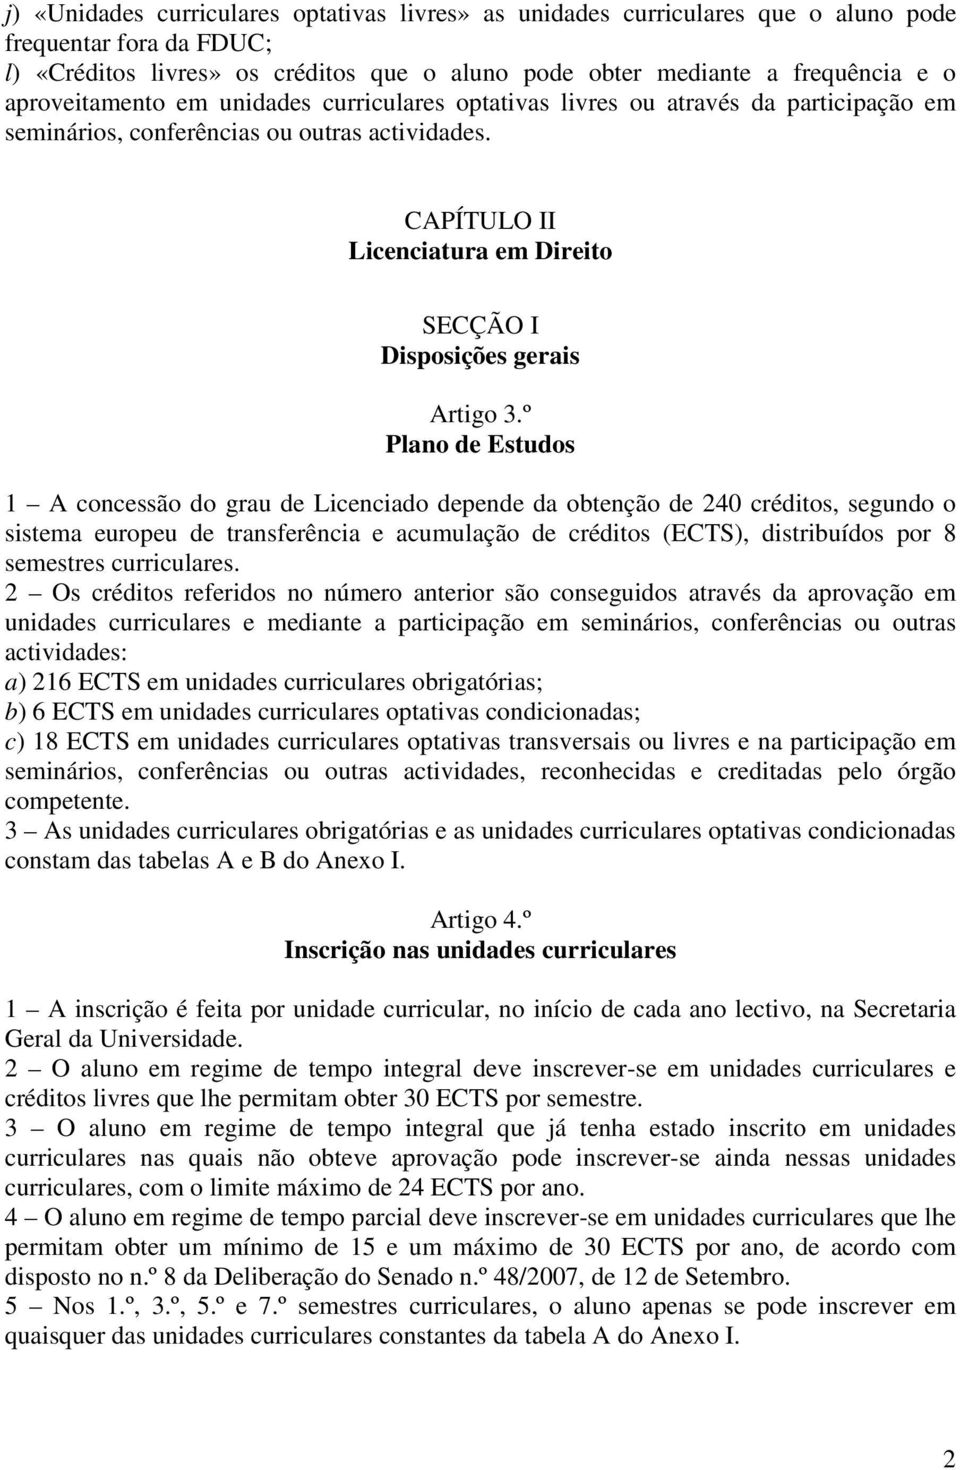 CAPÍTULO II Licenciatura em Direito SECÇÃO I Disposições gerais Artigo 3.